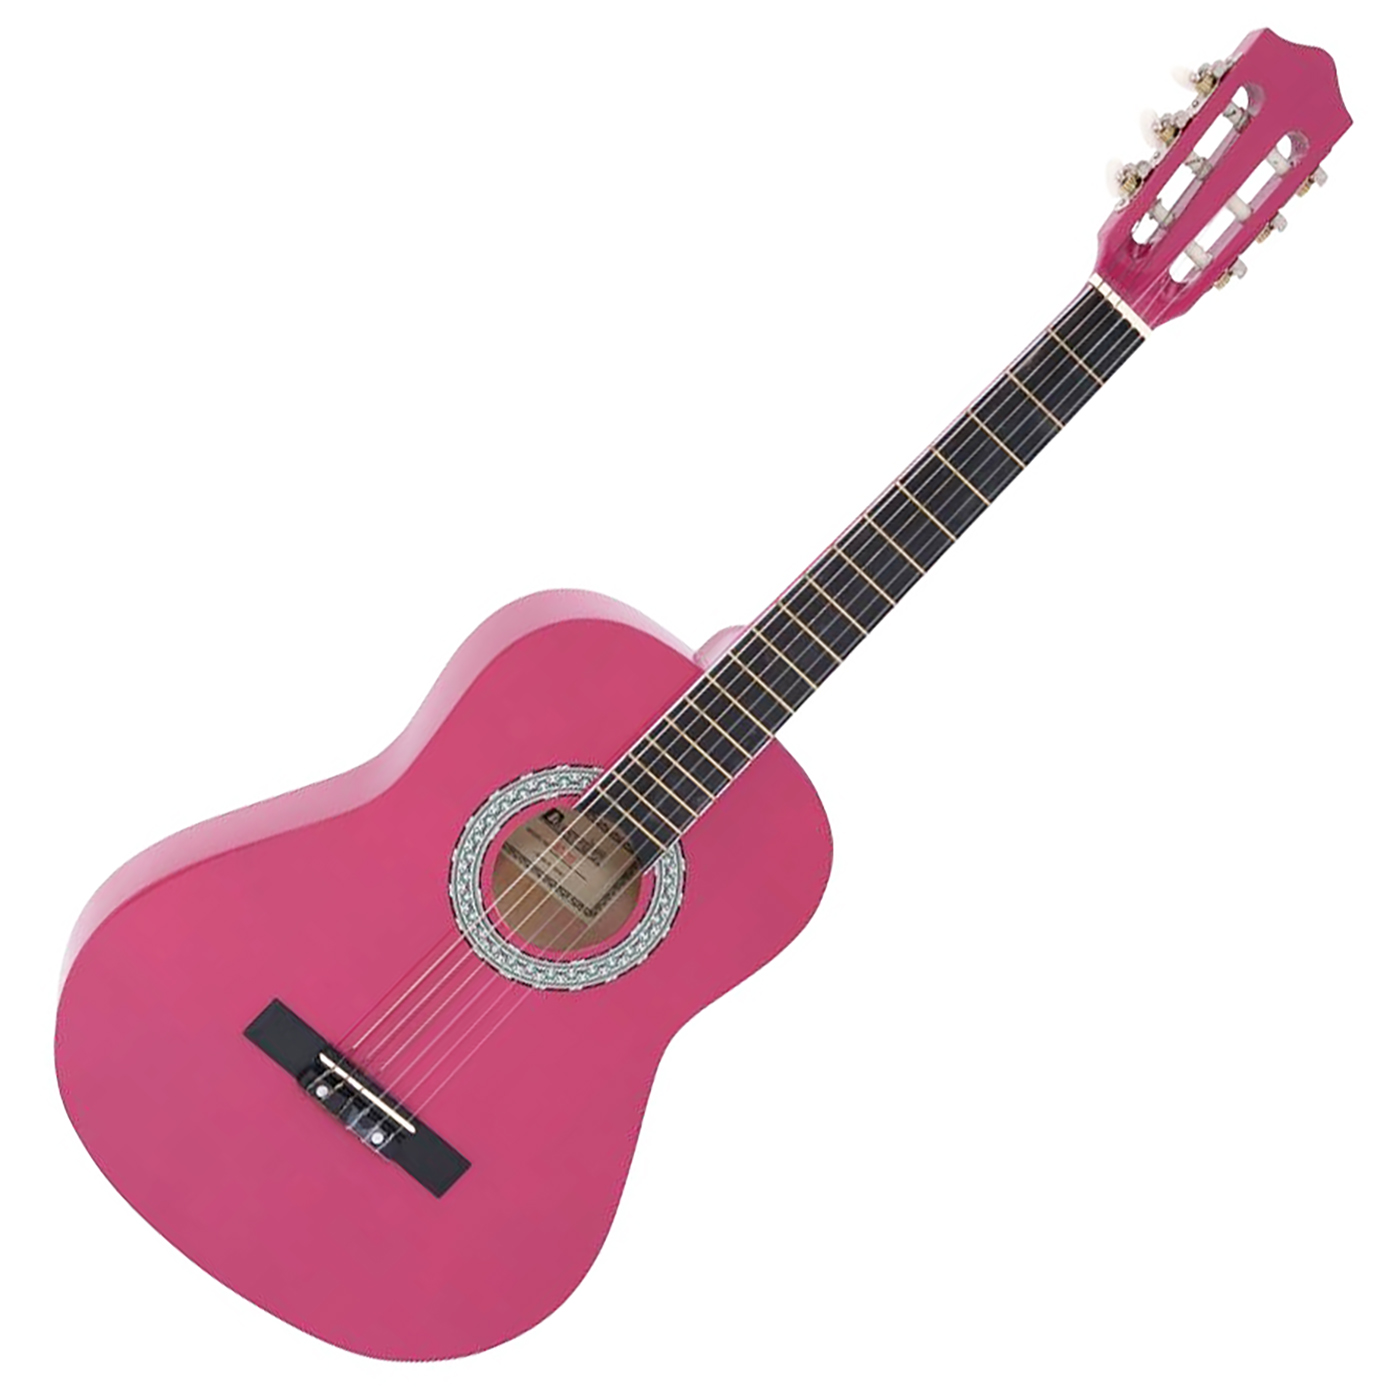 Billede af DiMavery AC-303 Klassisk Spansk Guitar 3/4 (Pink)